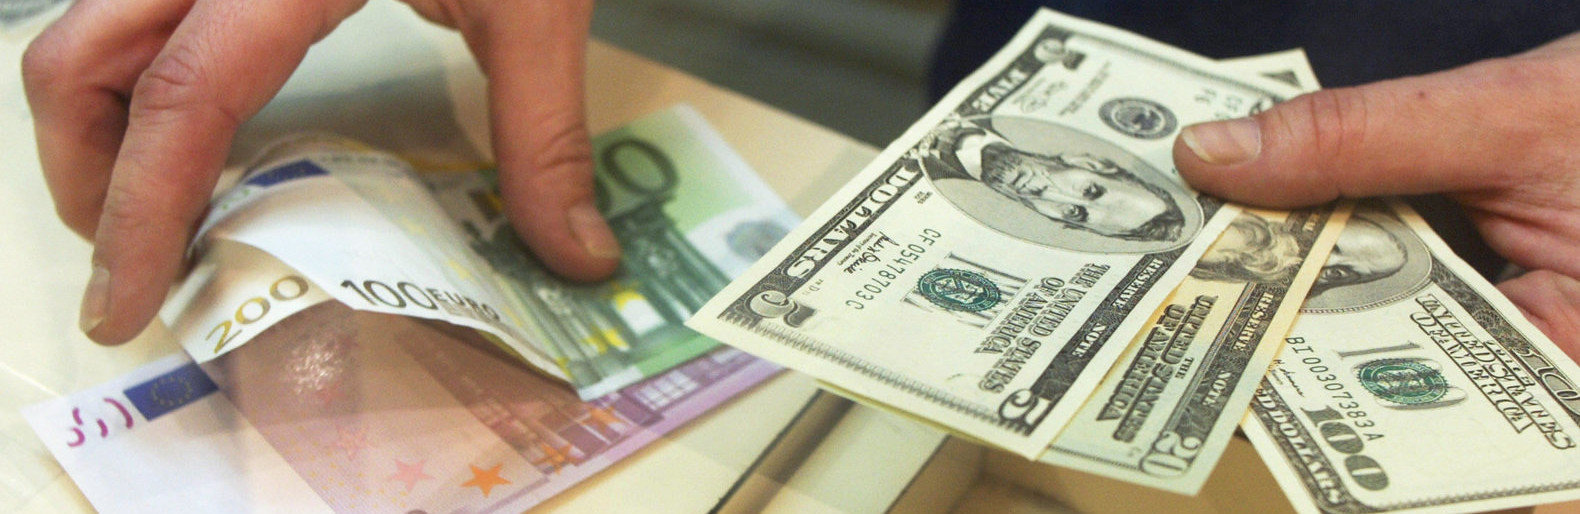 обмен валют в красноярске сегодня